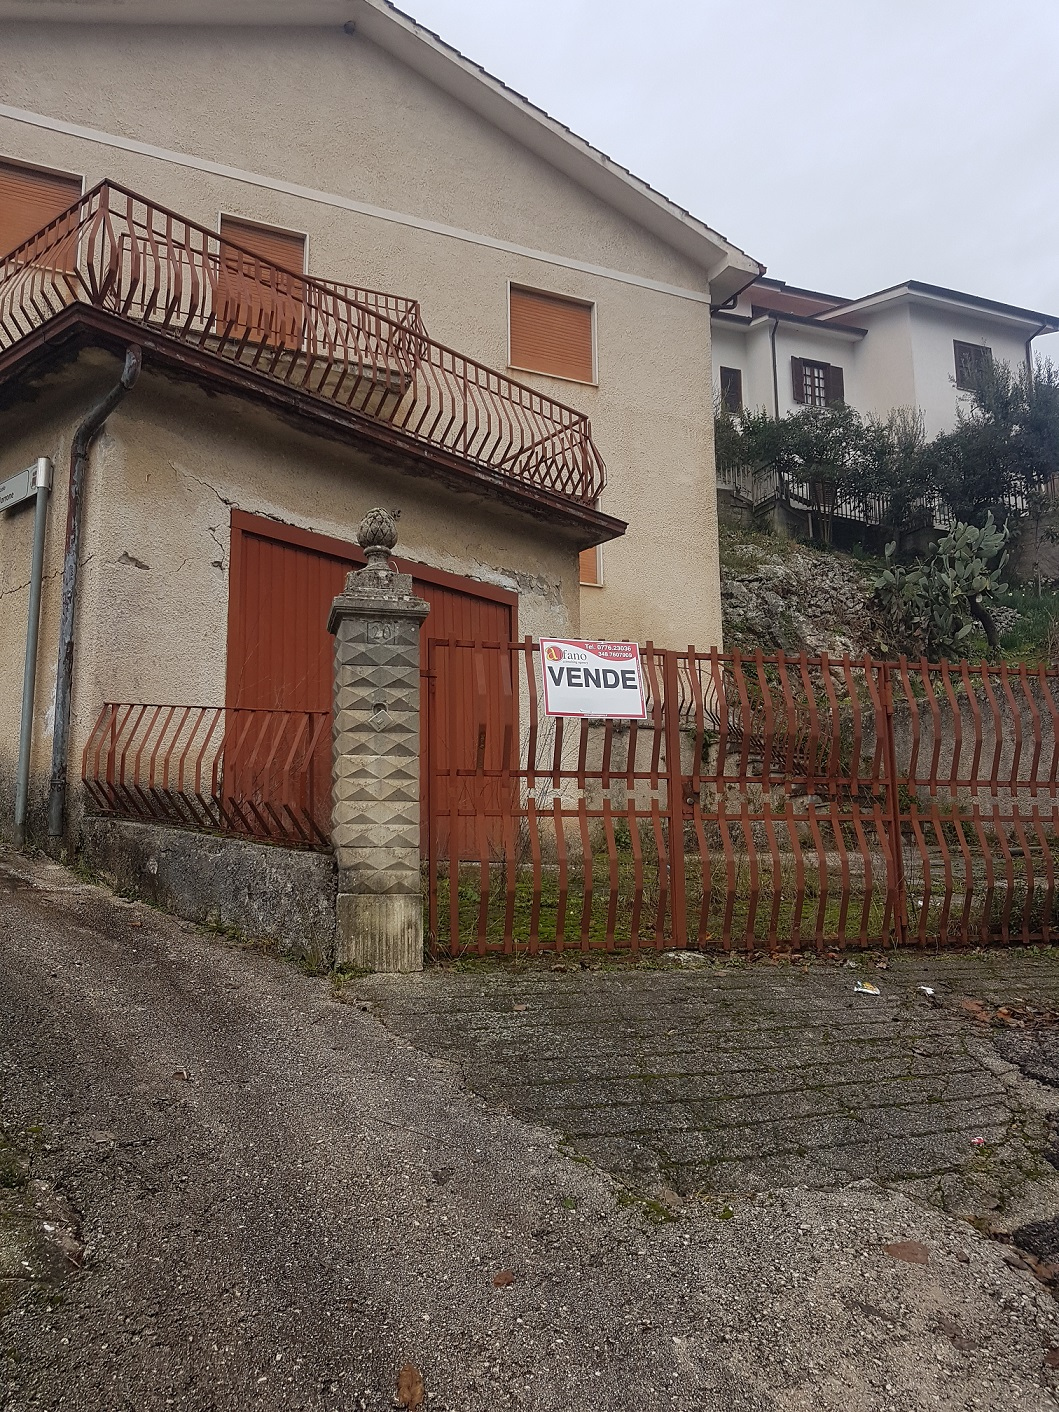 Casa indipendente in vendita a belmonte castello cod 58 for Casa indipendente